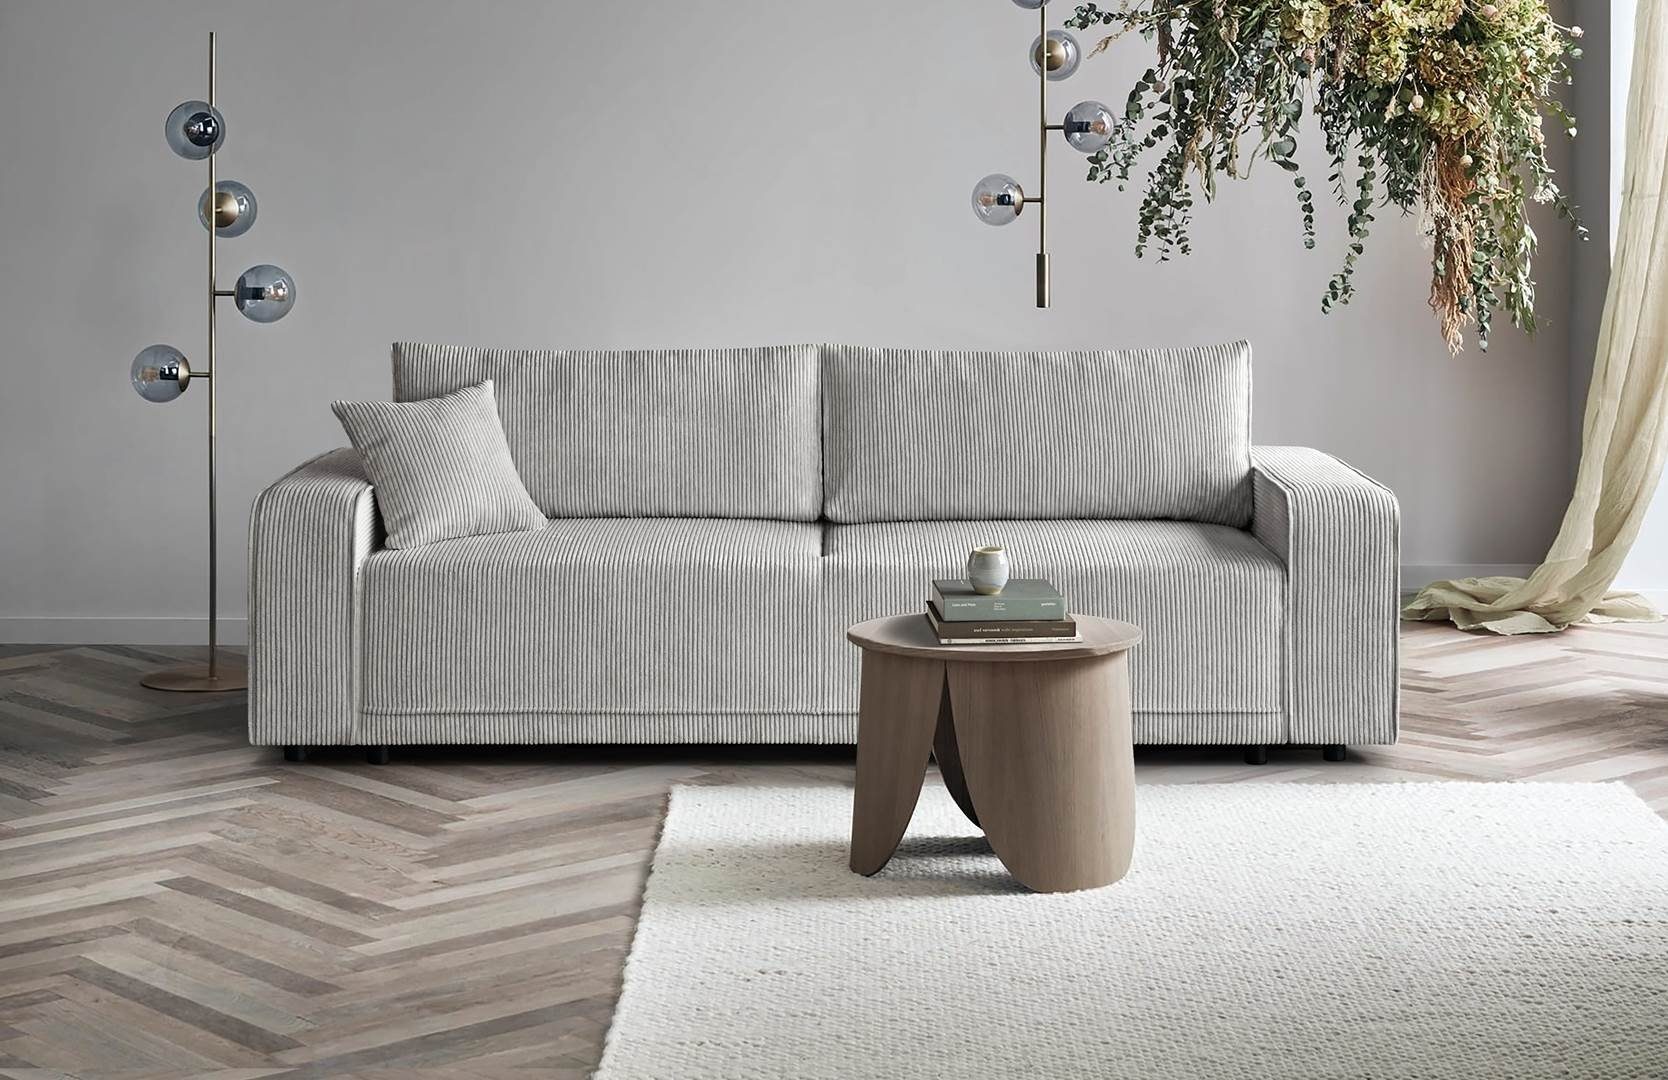 Beautysofa Schlafsofa PRIMO, modernes Design Sofa, Wellenfedern, Schlaffunktion, Bettkasten, breite Armlehnen Beige (poso 100)